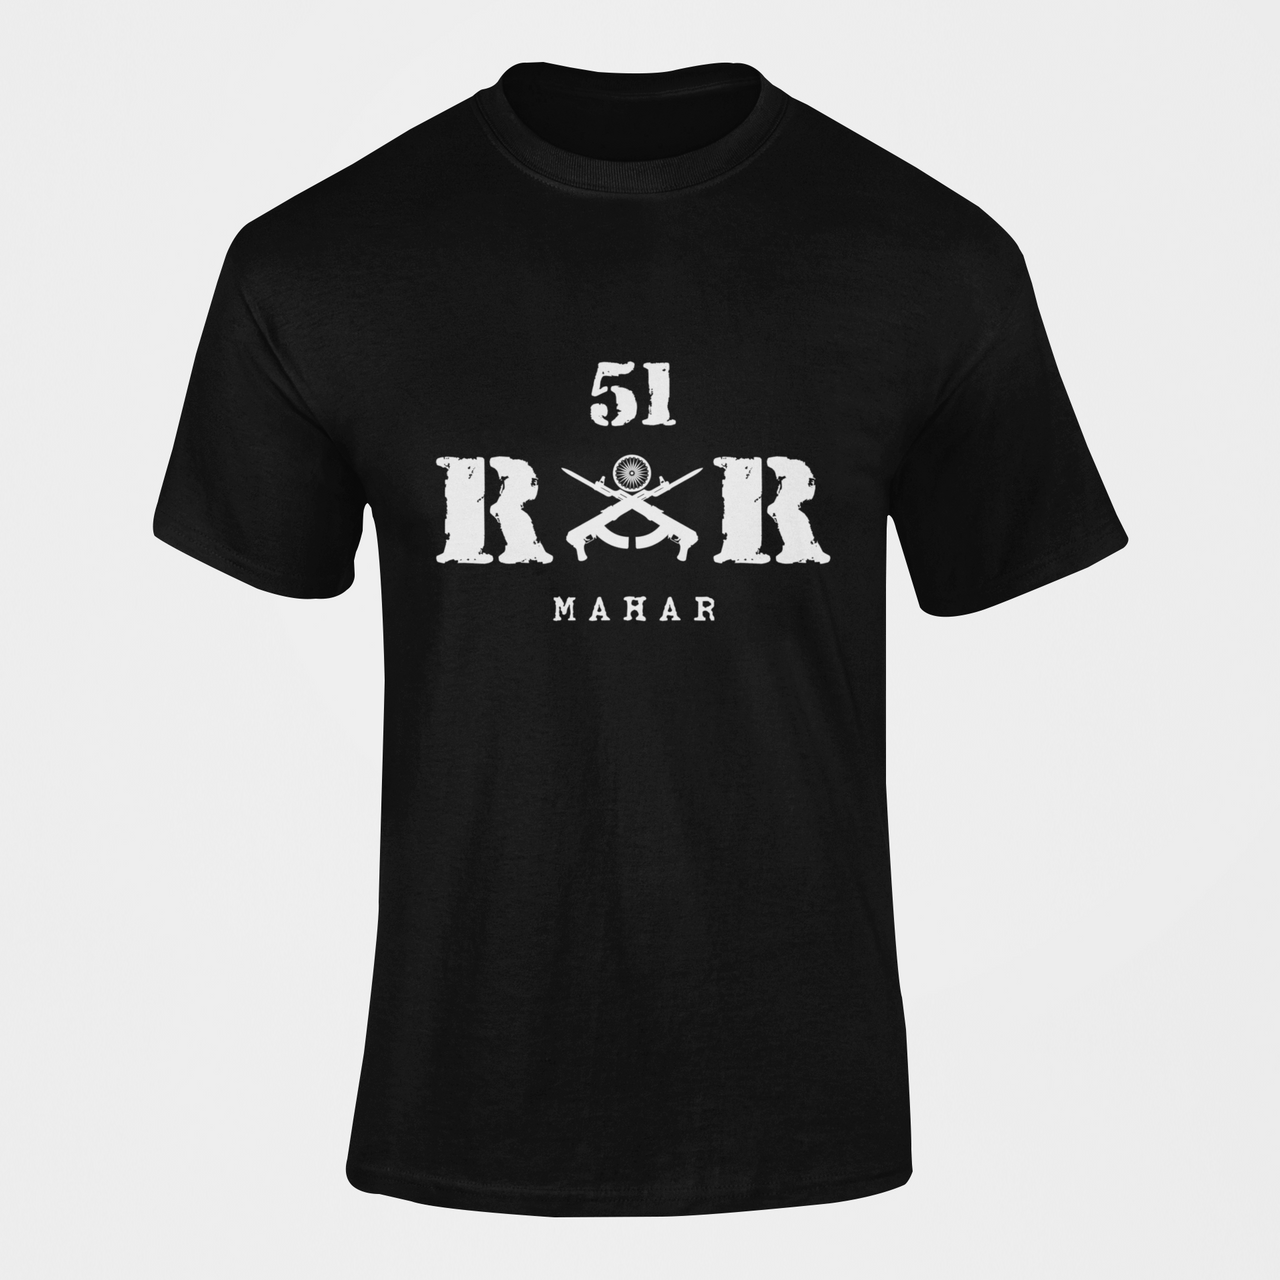 Rashtriya Rifles T-shirt - 51 RR Mahar (Men)